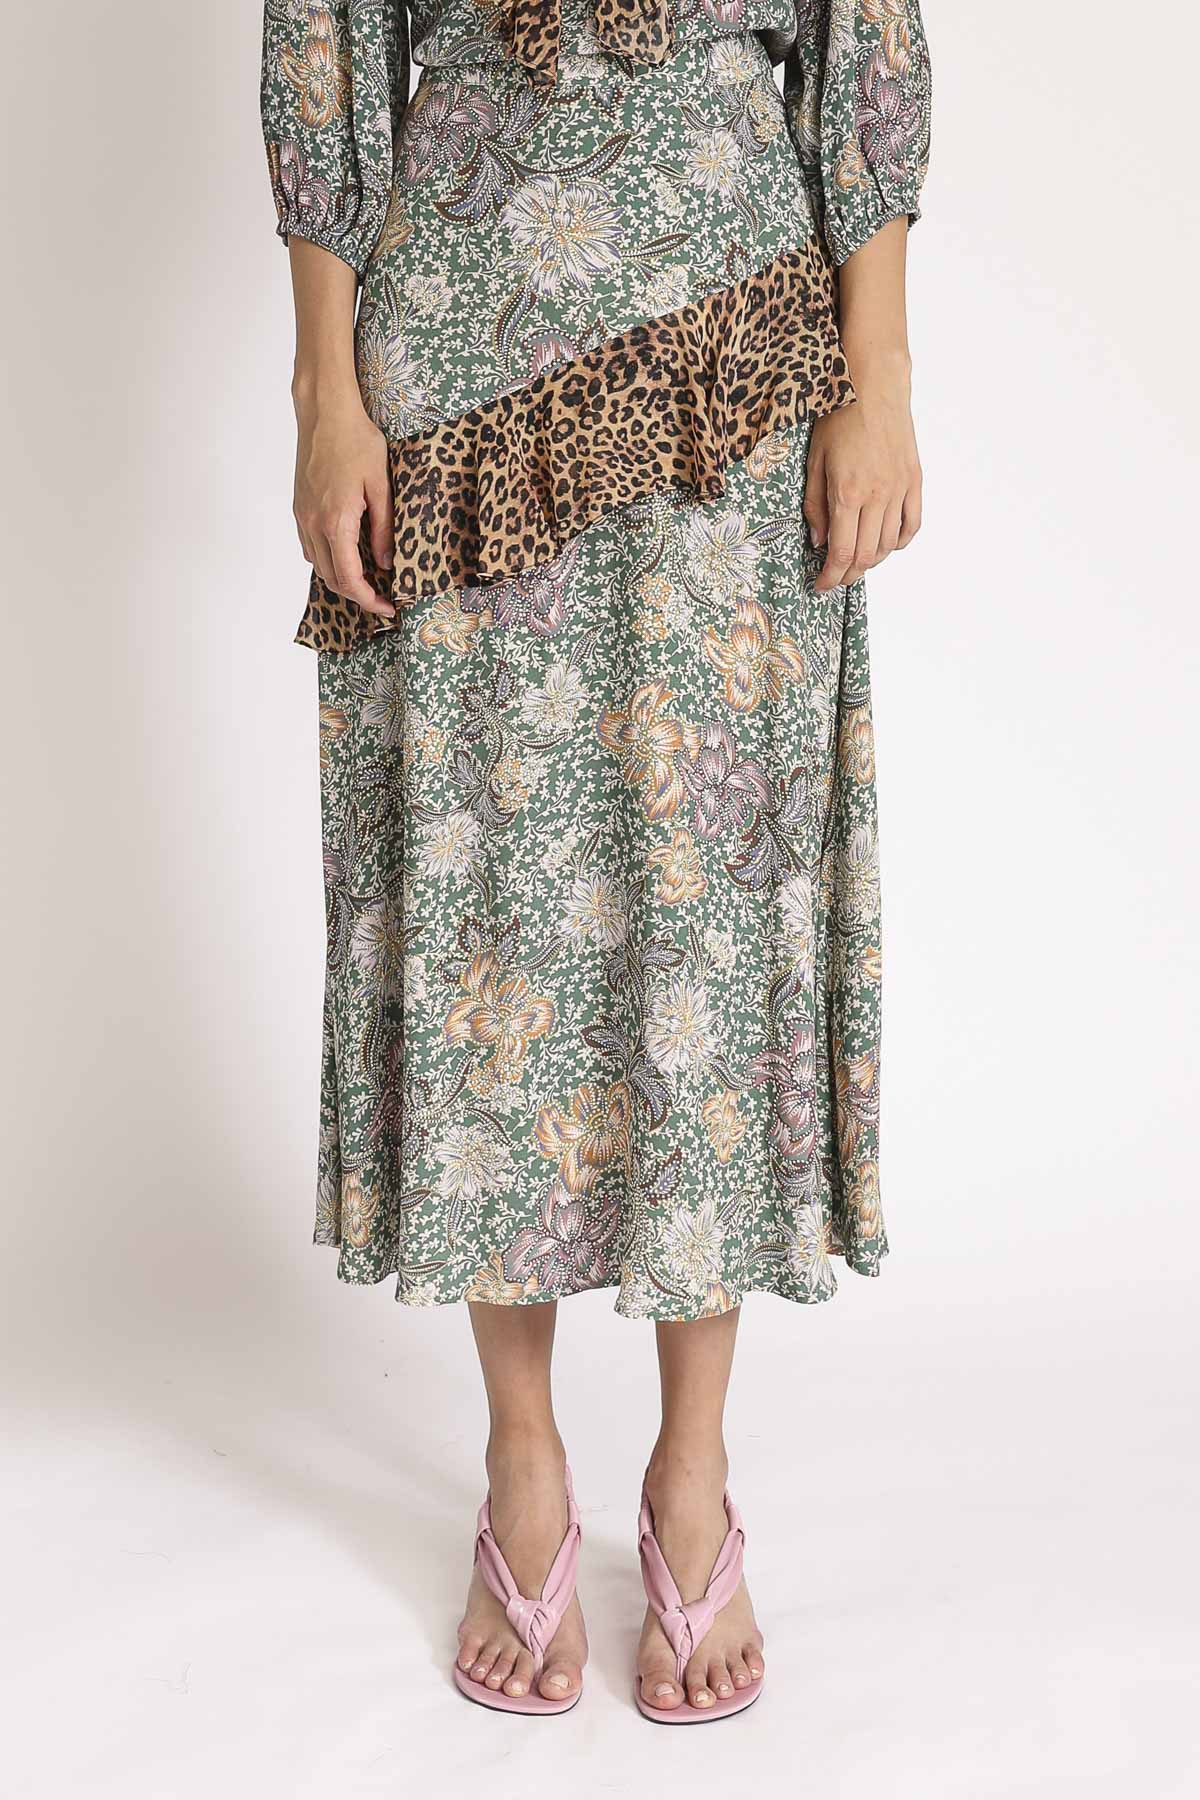 Colette Ruffle Skirt